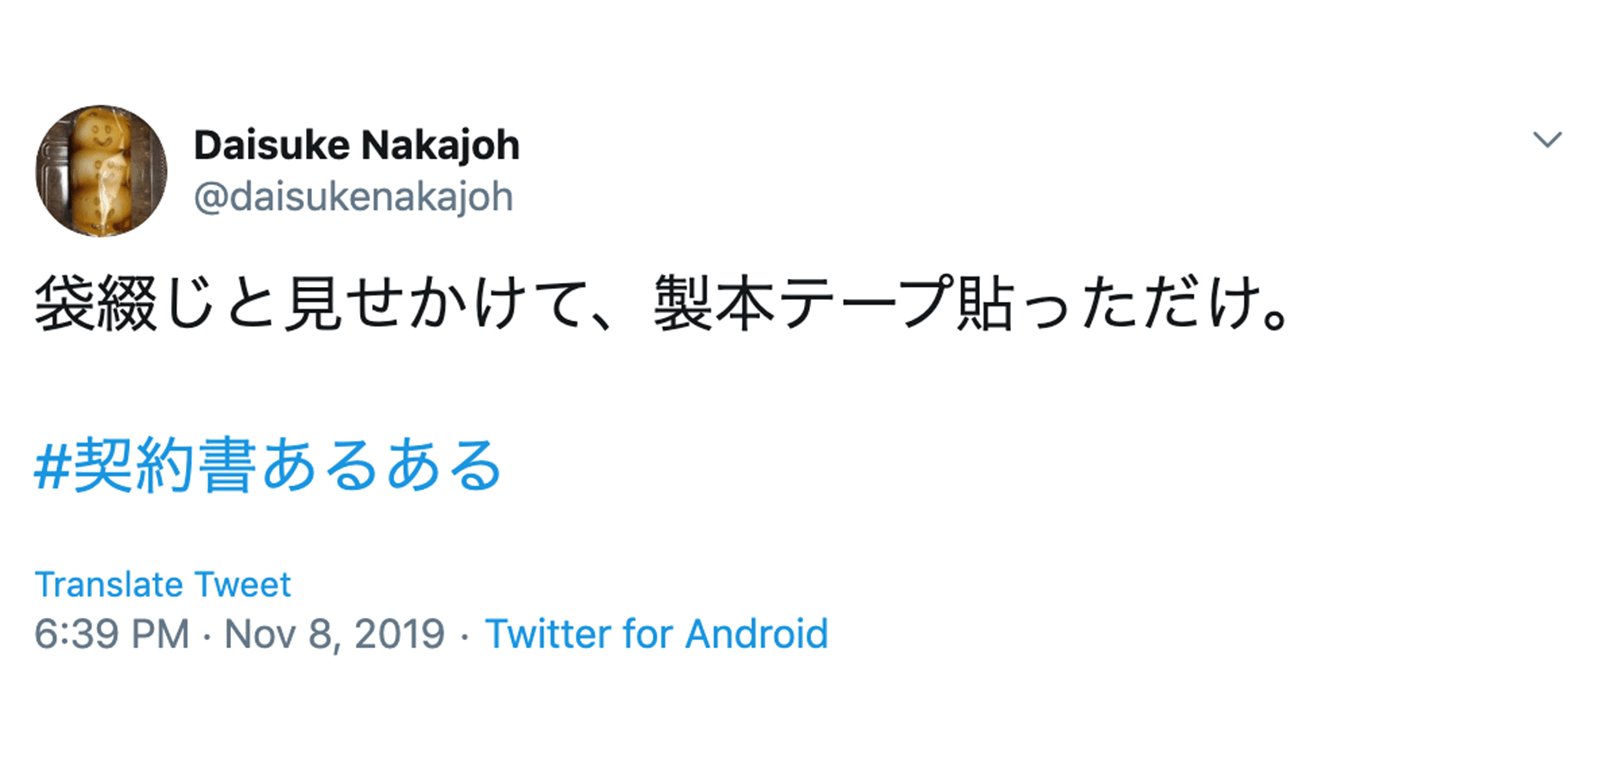 https://twitter.com/daisukenakajoh/status/1192738500342247424